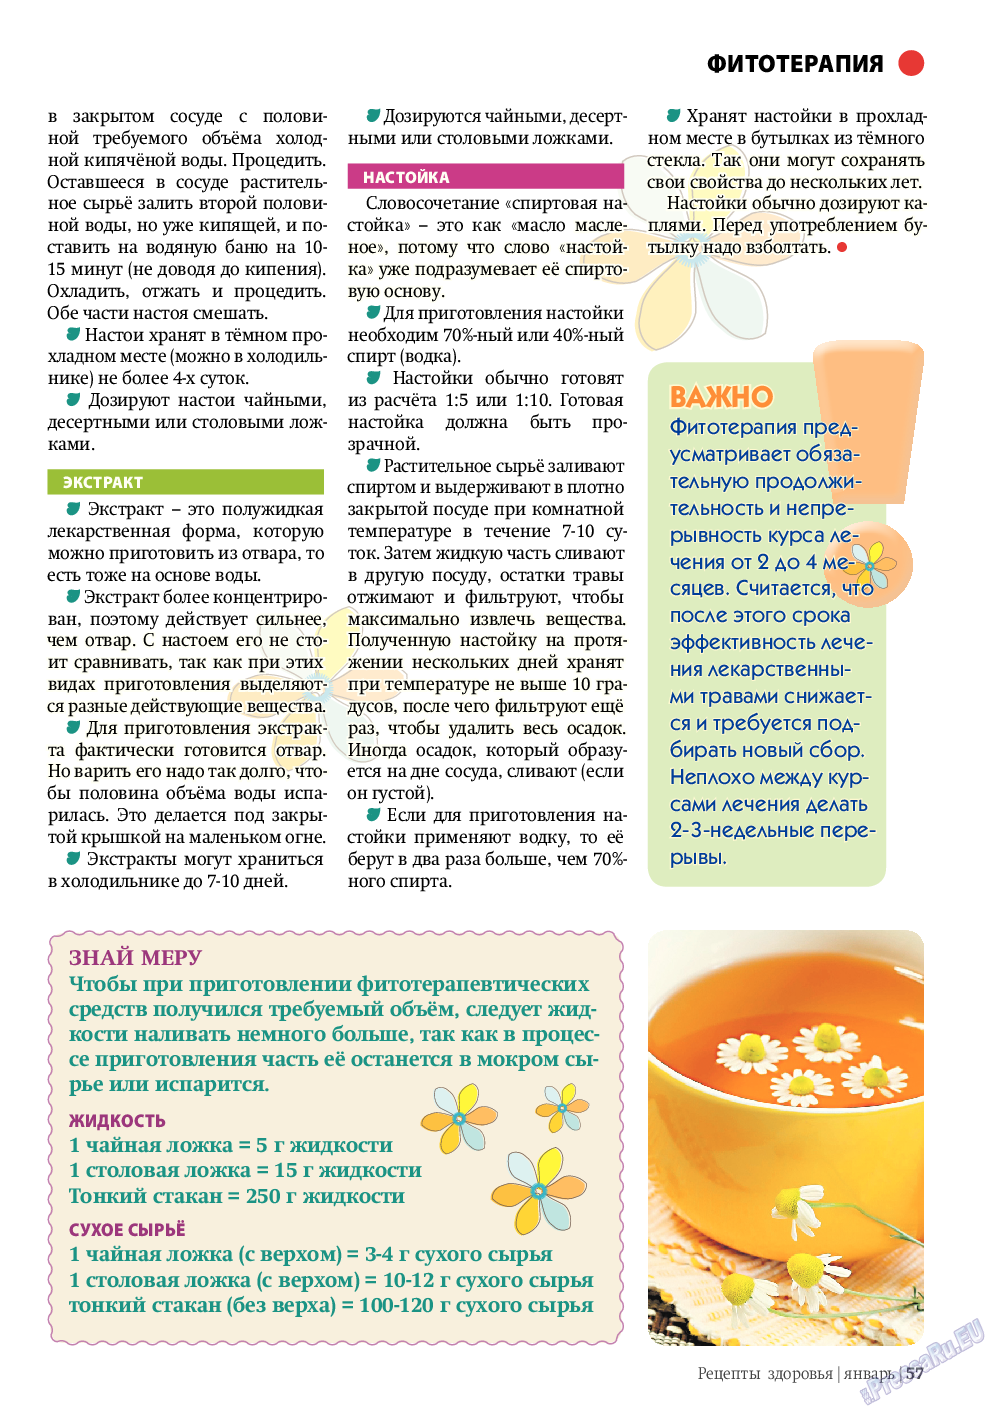 Рецепты здоровья, журнал. 2012 №1 стр.57